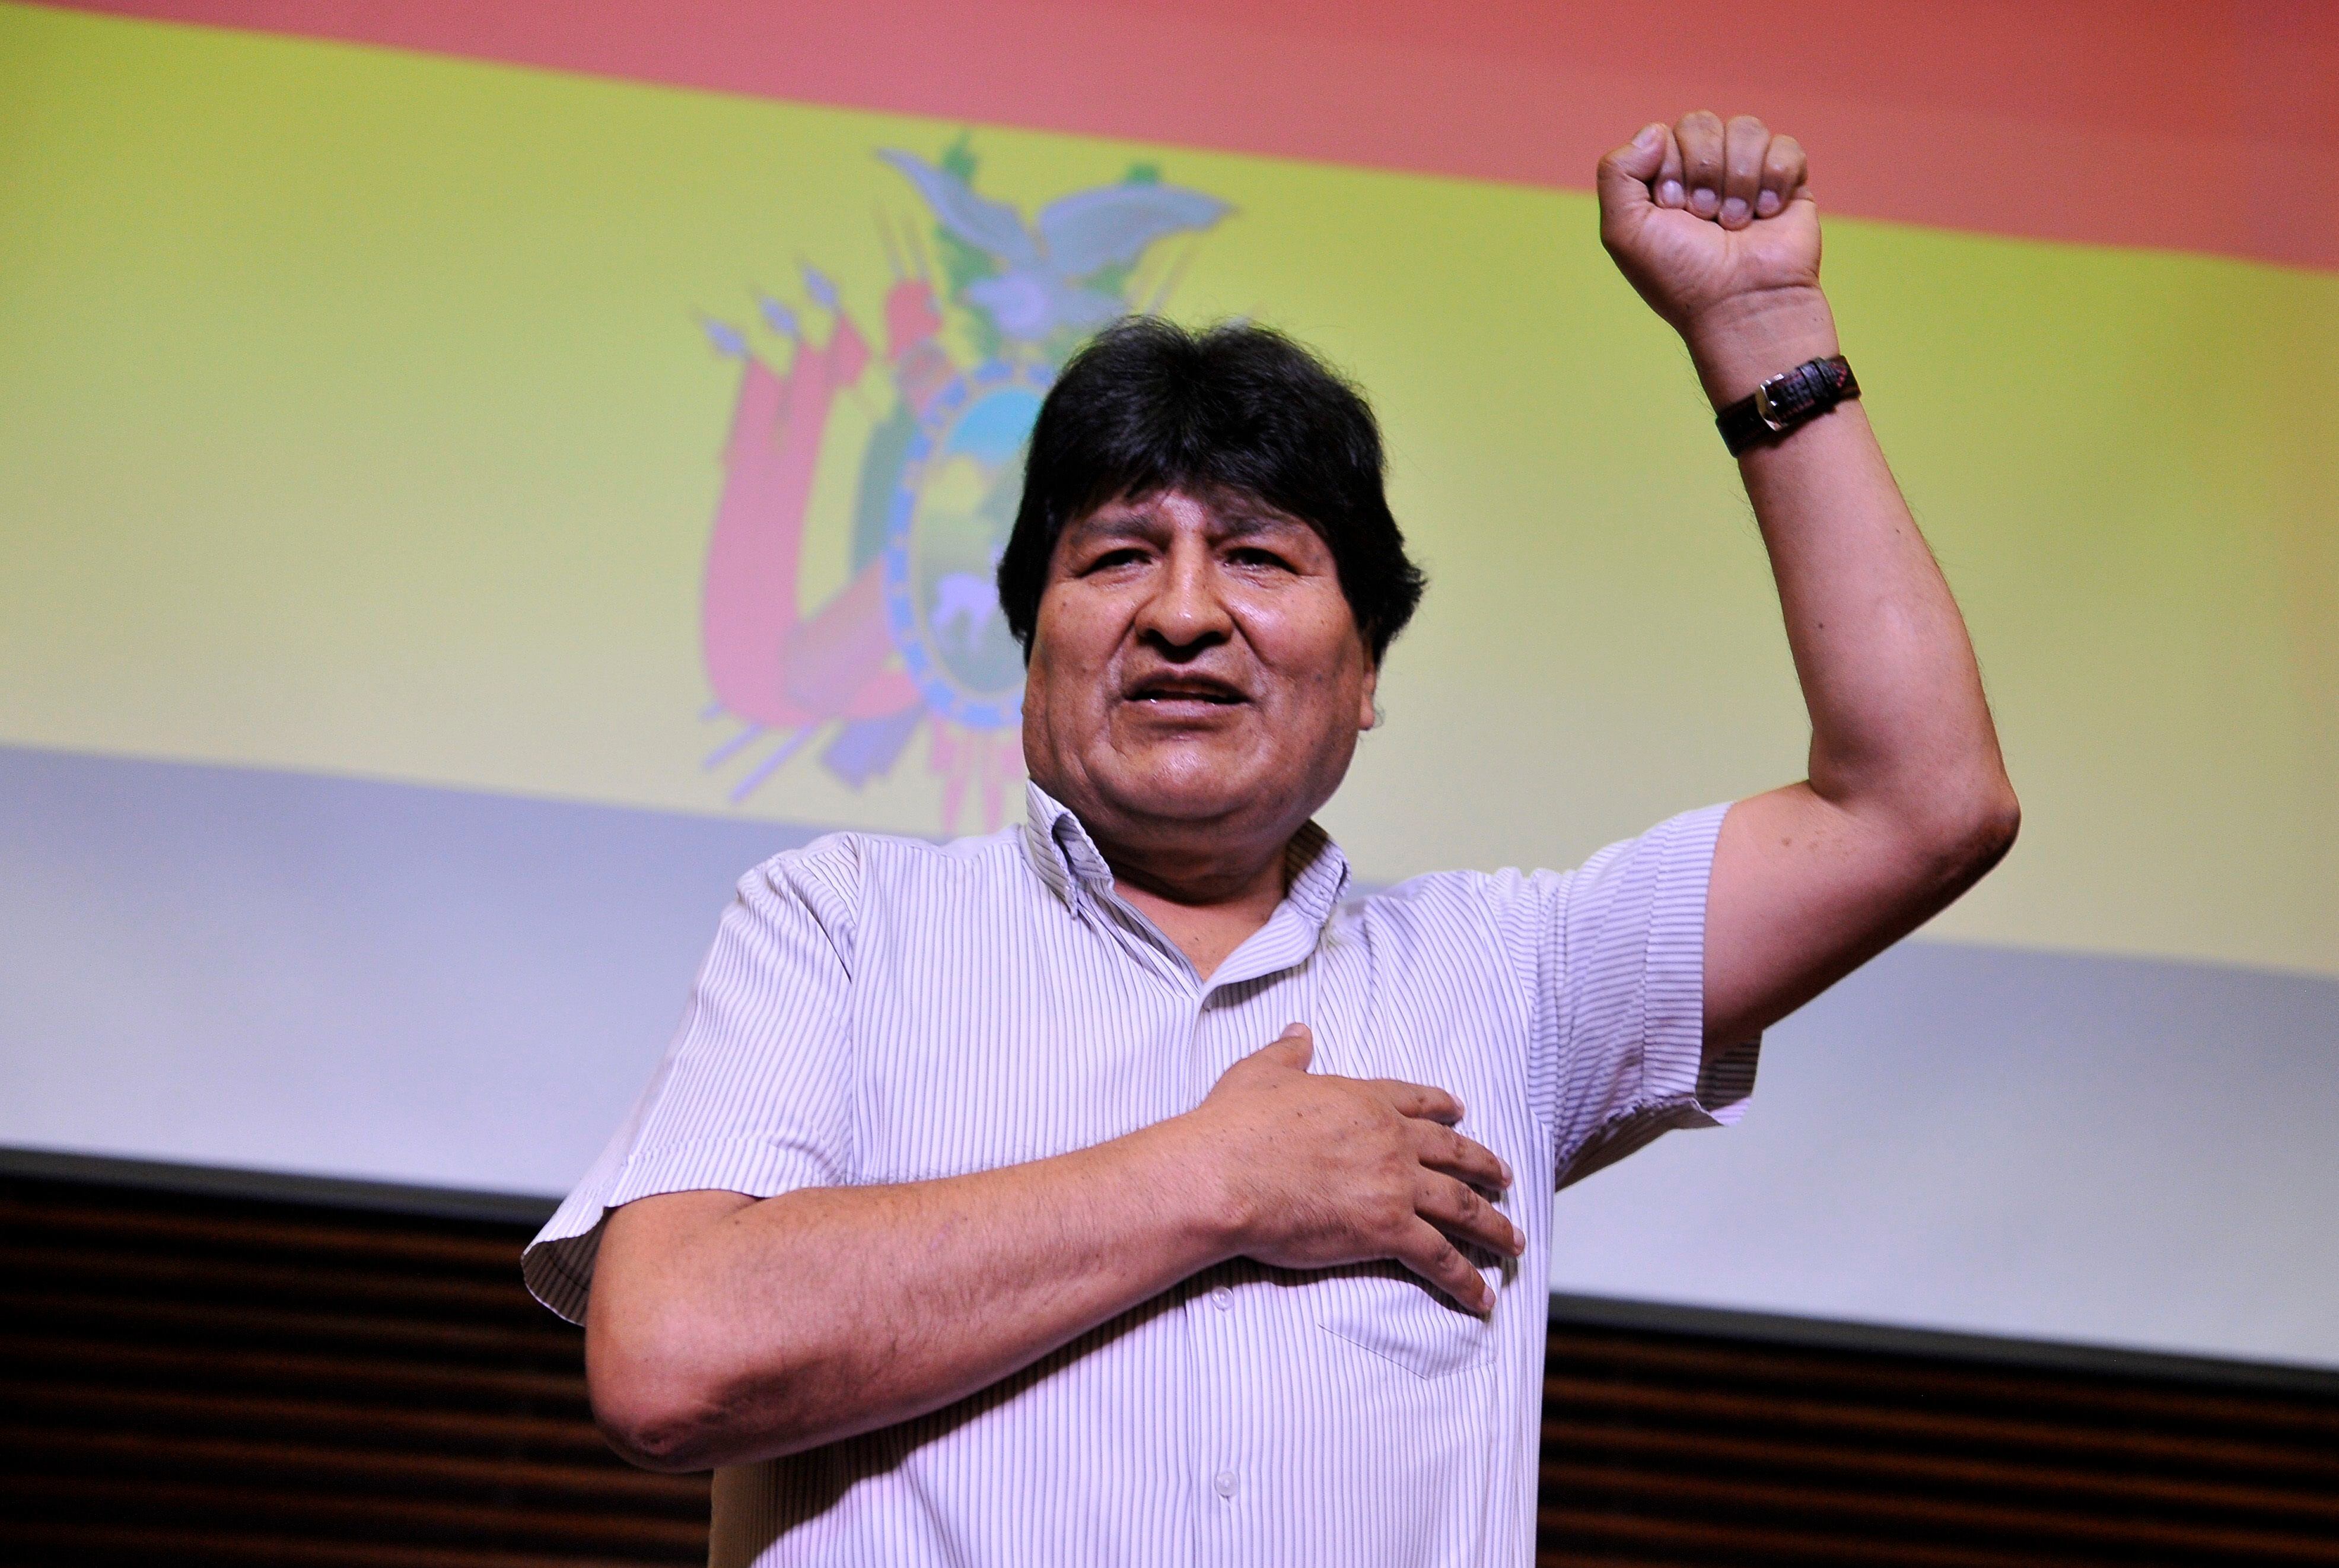 Pese a la negativa ciudadana, en 2019 Evo Morales se volvió a presentar a las elecciones presidenciales gracias al aval del Tribunal Constitucional, afín a su Gobierno (EFE/Enrique García)